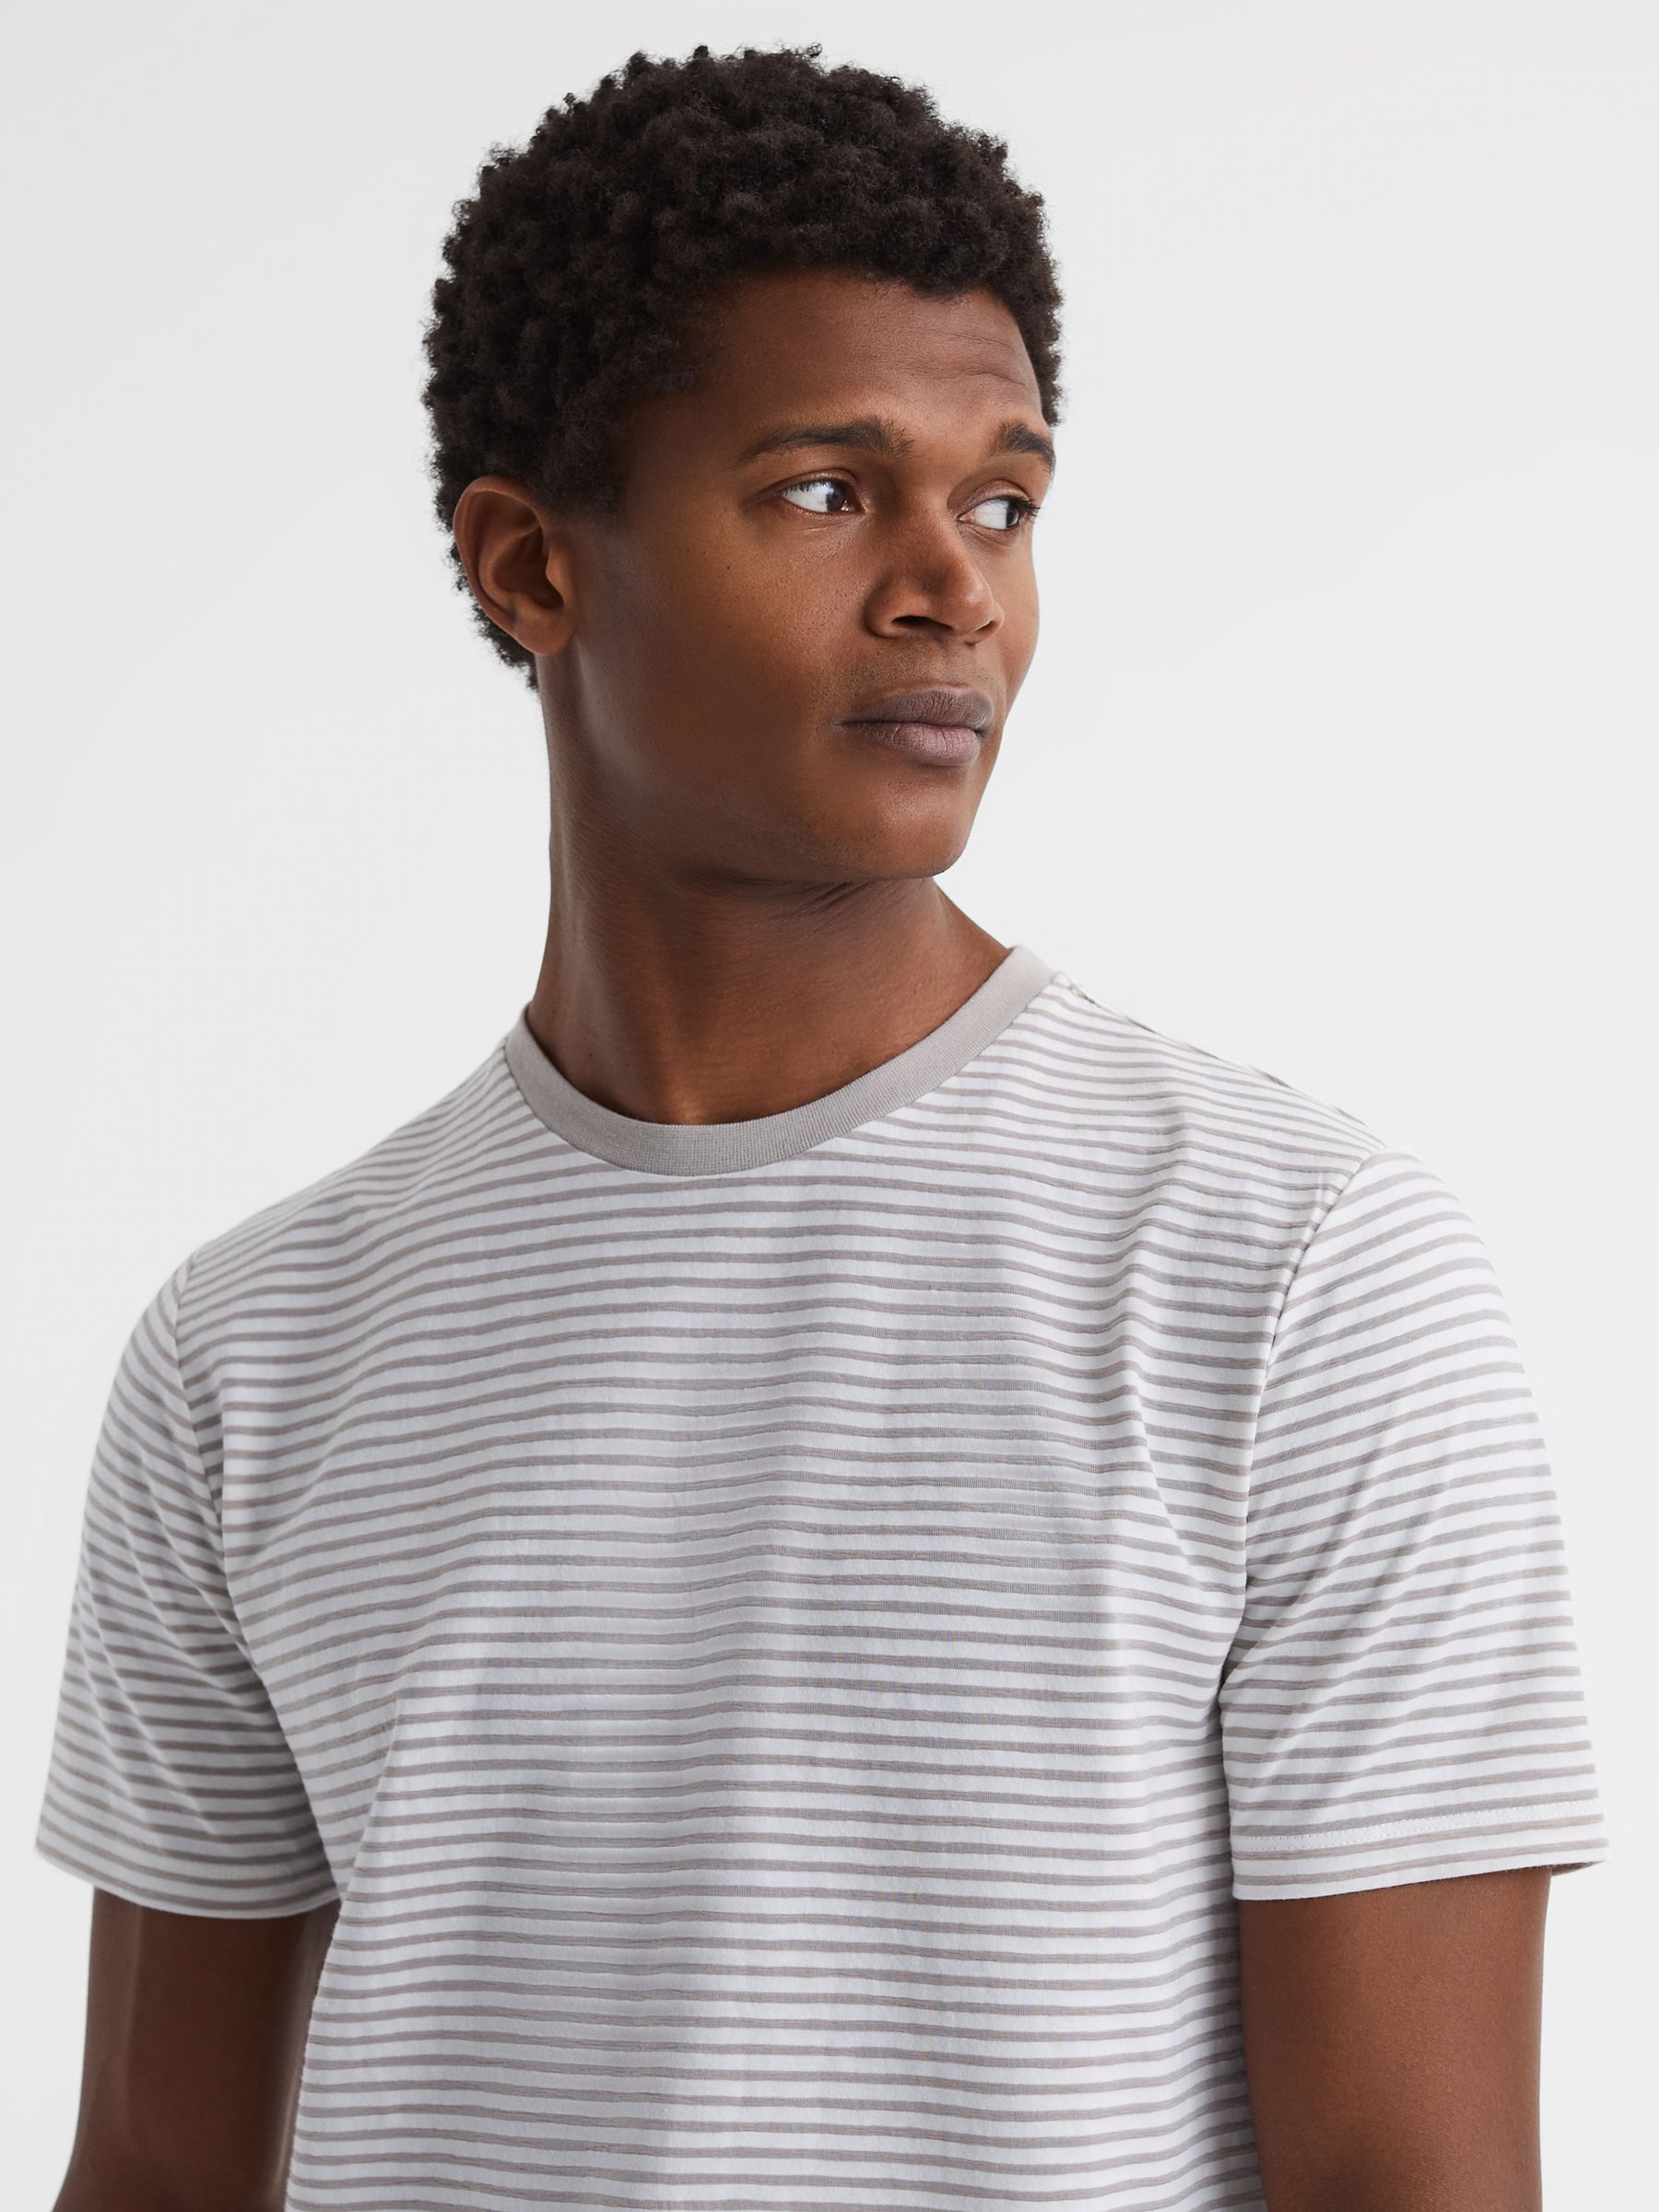 Reiss Keats Striped Short Sleeve Crew Neck T-Shirt | REISS USA